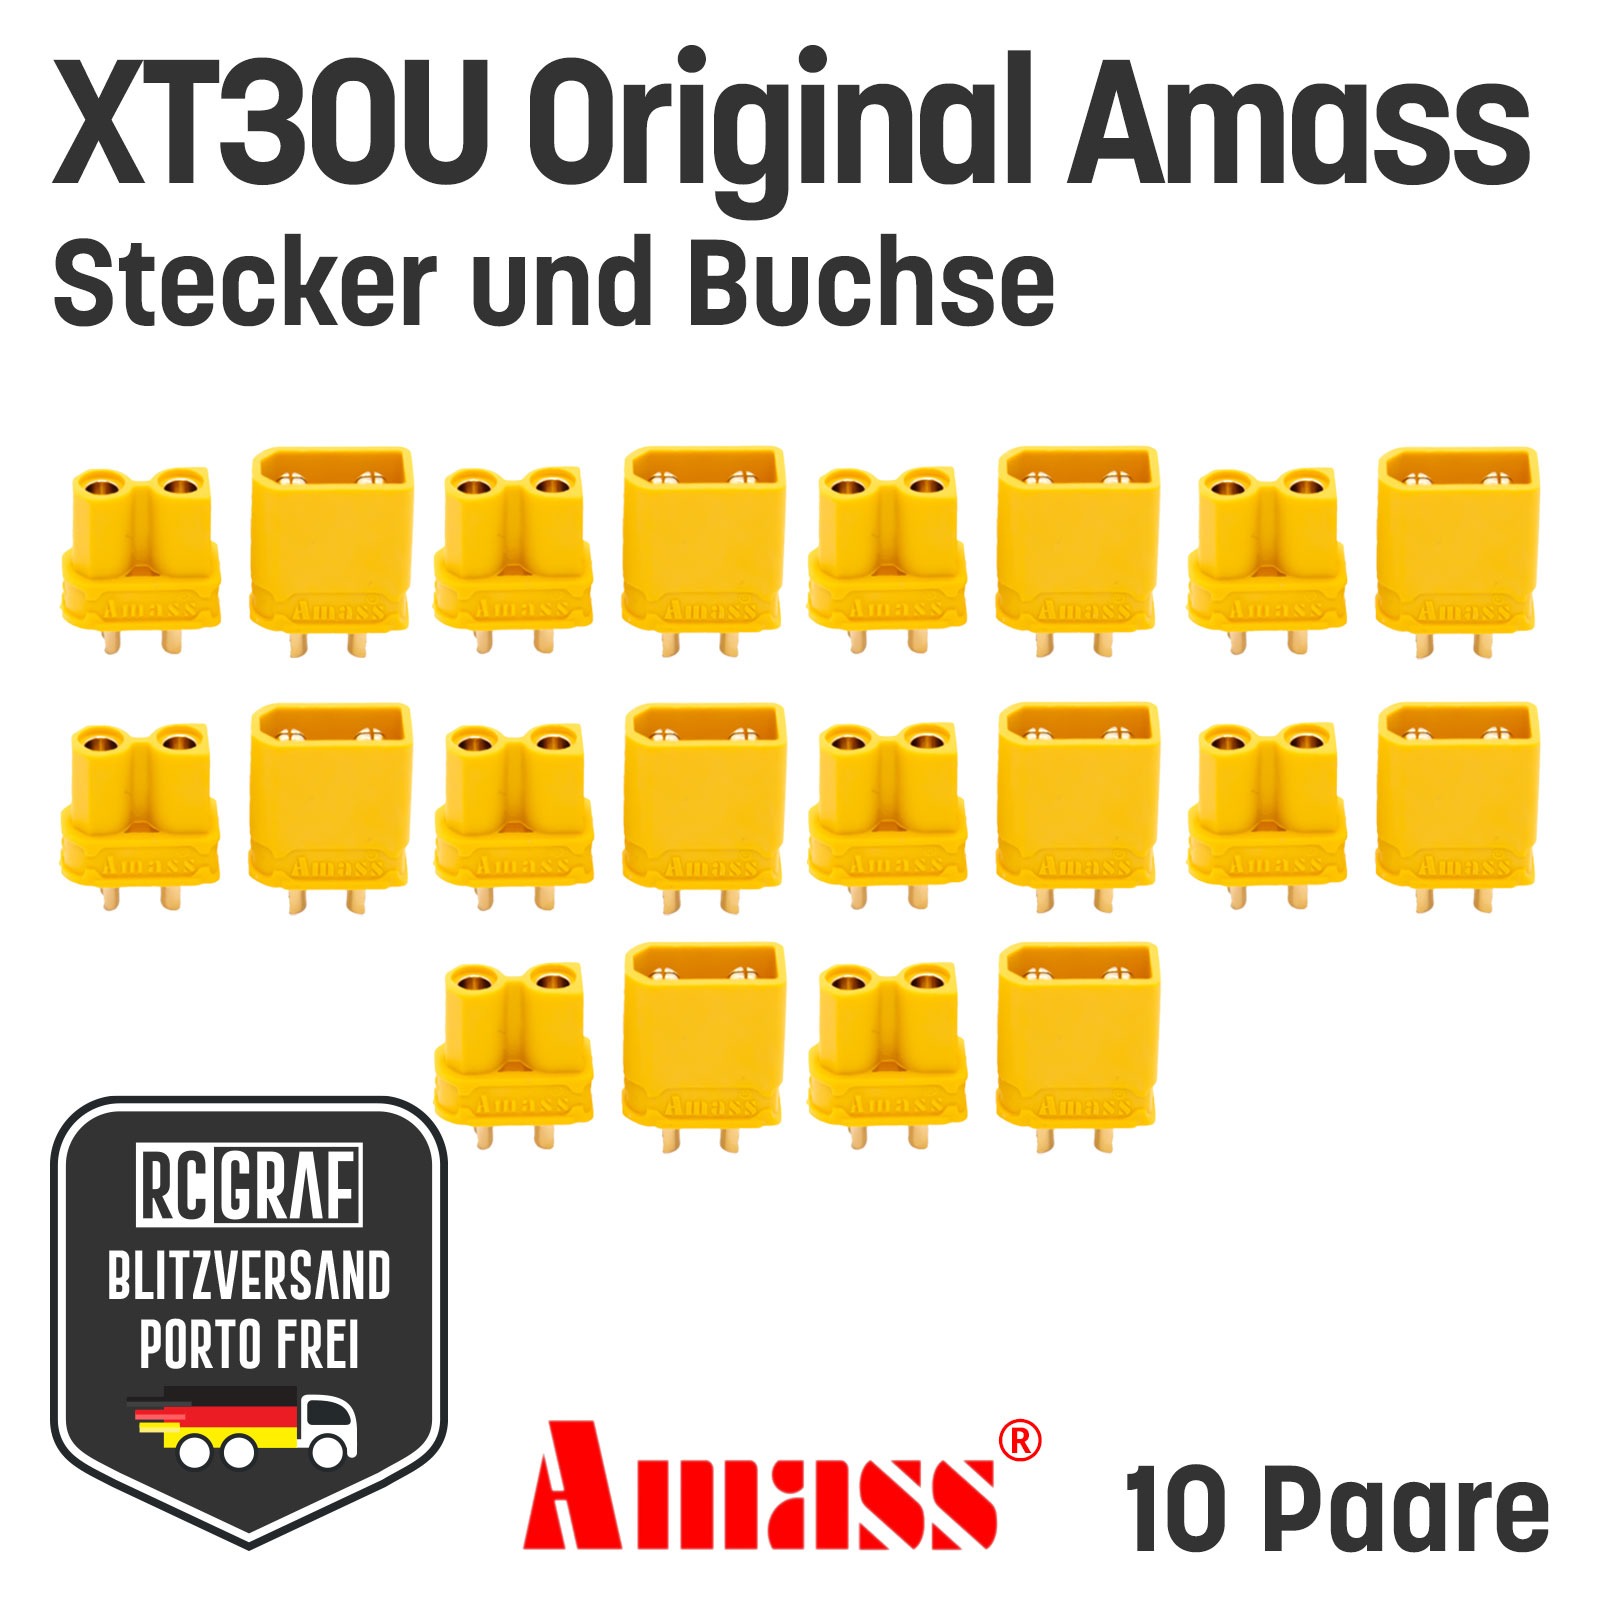 10 Paare XT30U Original Amass